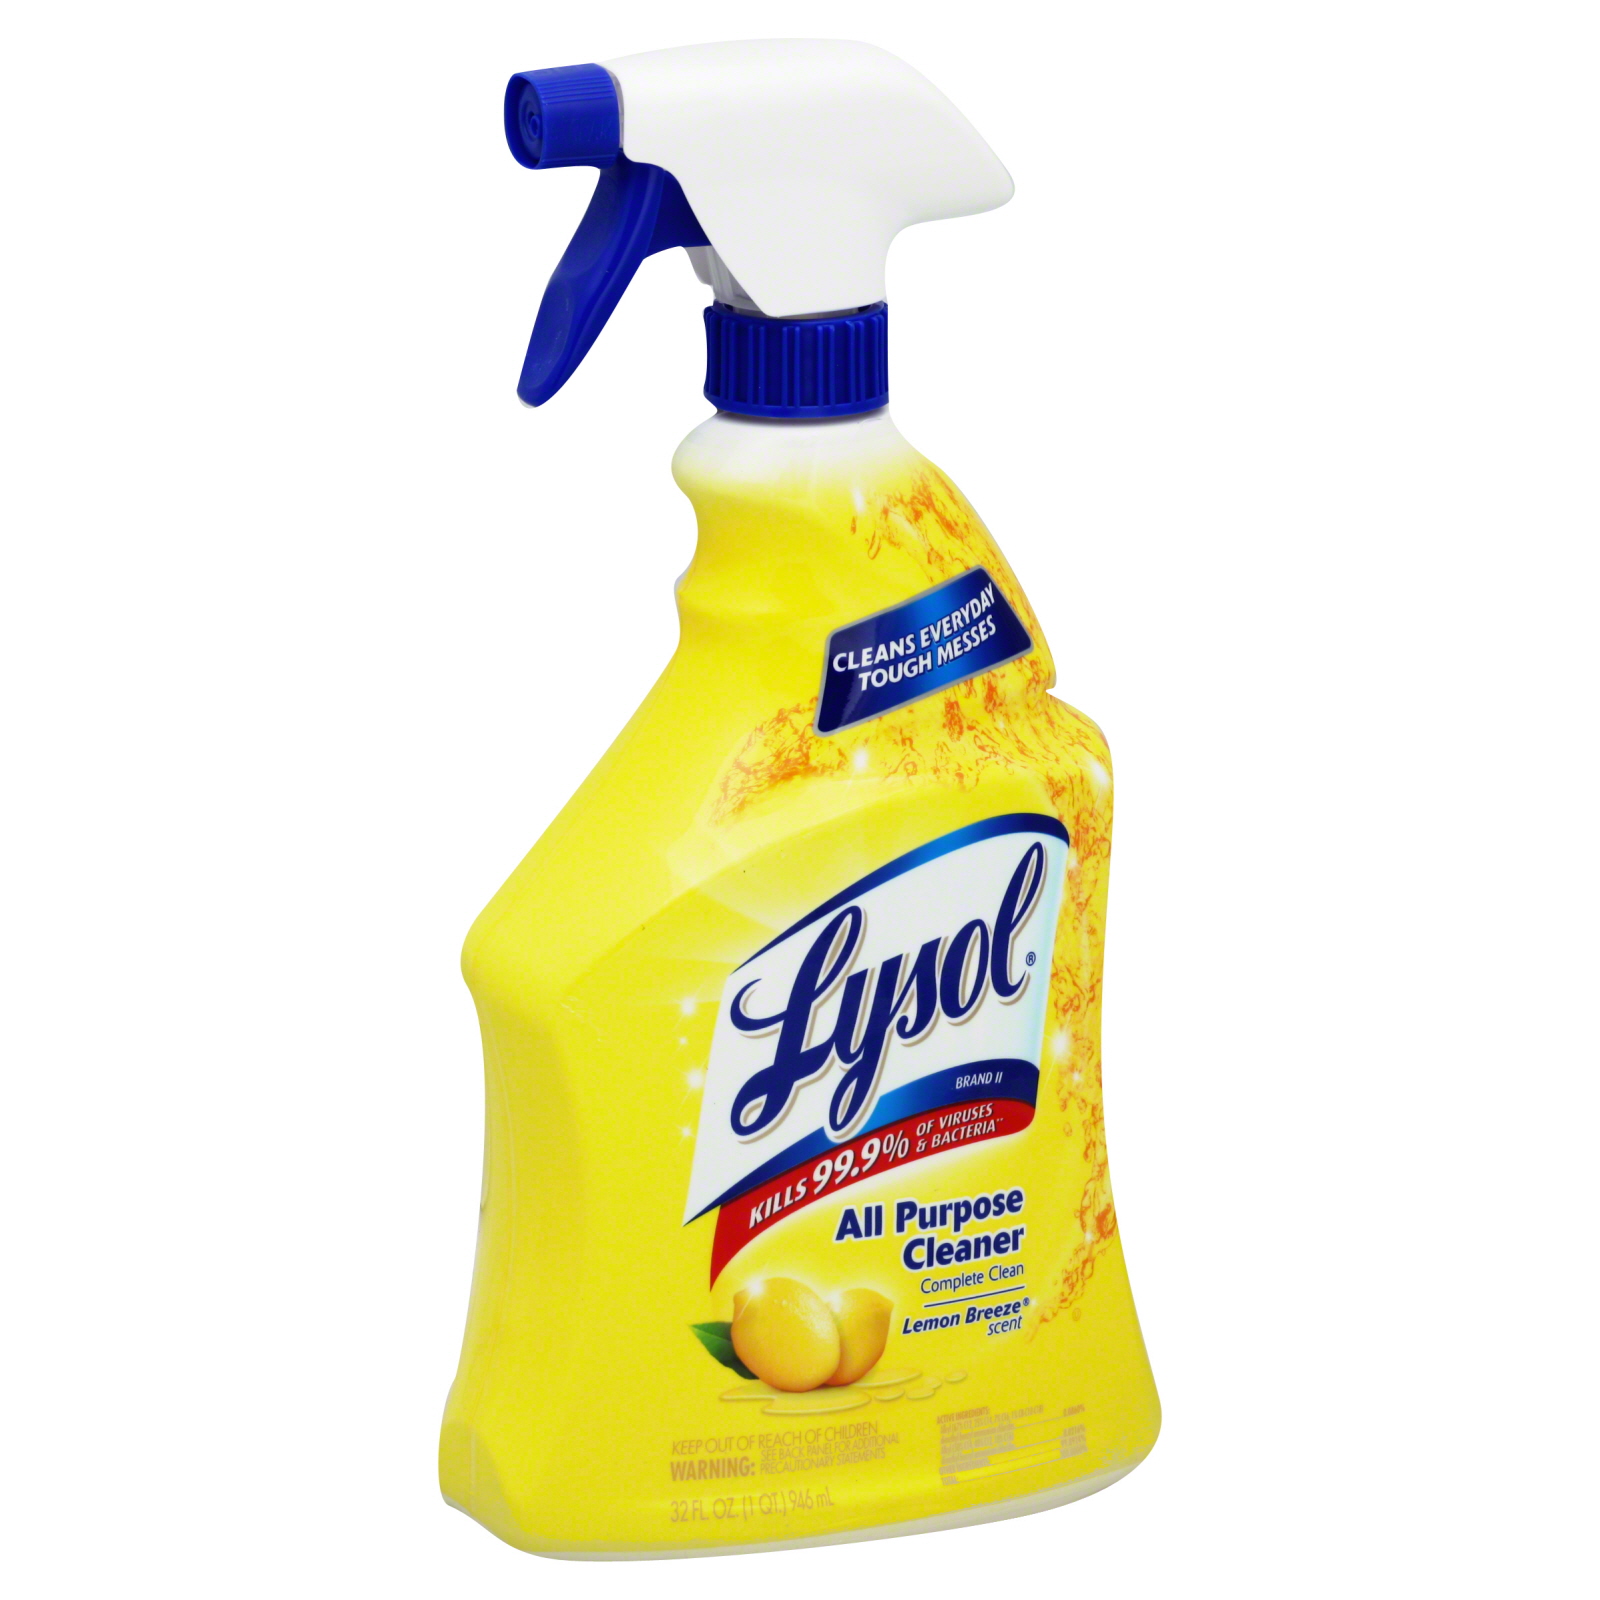  EXPO 81803 Non-Toxic Whiteboard Cleaner, 8oz Spray